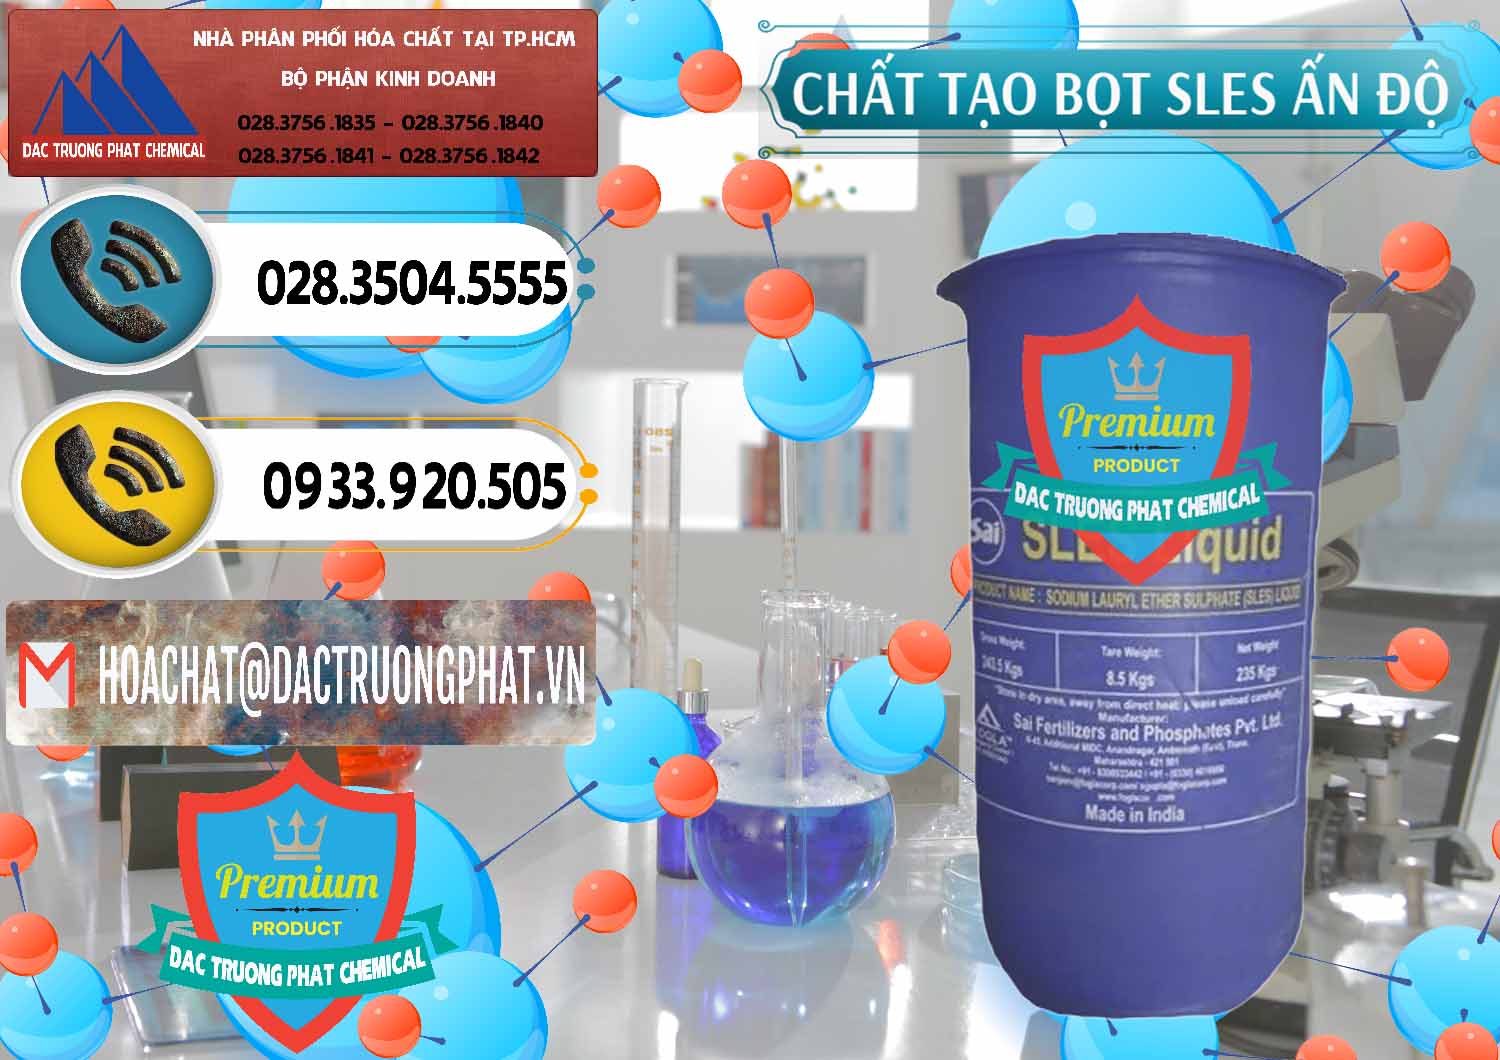 Công ty cung ứng & bán Chất Tạo Bọt Sles - Sodium Lauryl Ether Sulphate Ấn Độ India - 0333 - Cty chuyên bán _ cung cấp hóa chất tại TP.HCM - hoachatdetnhuom.vn